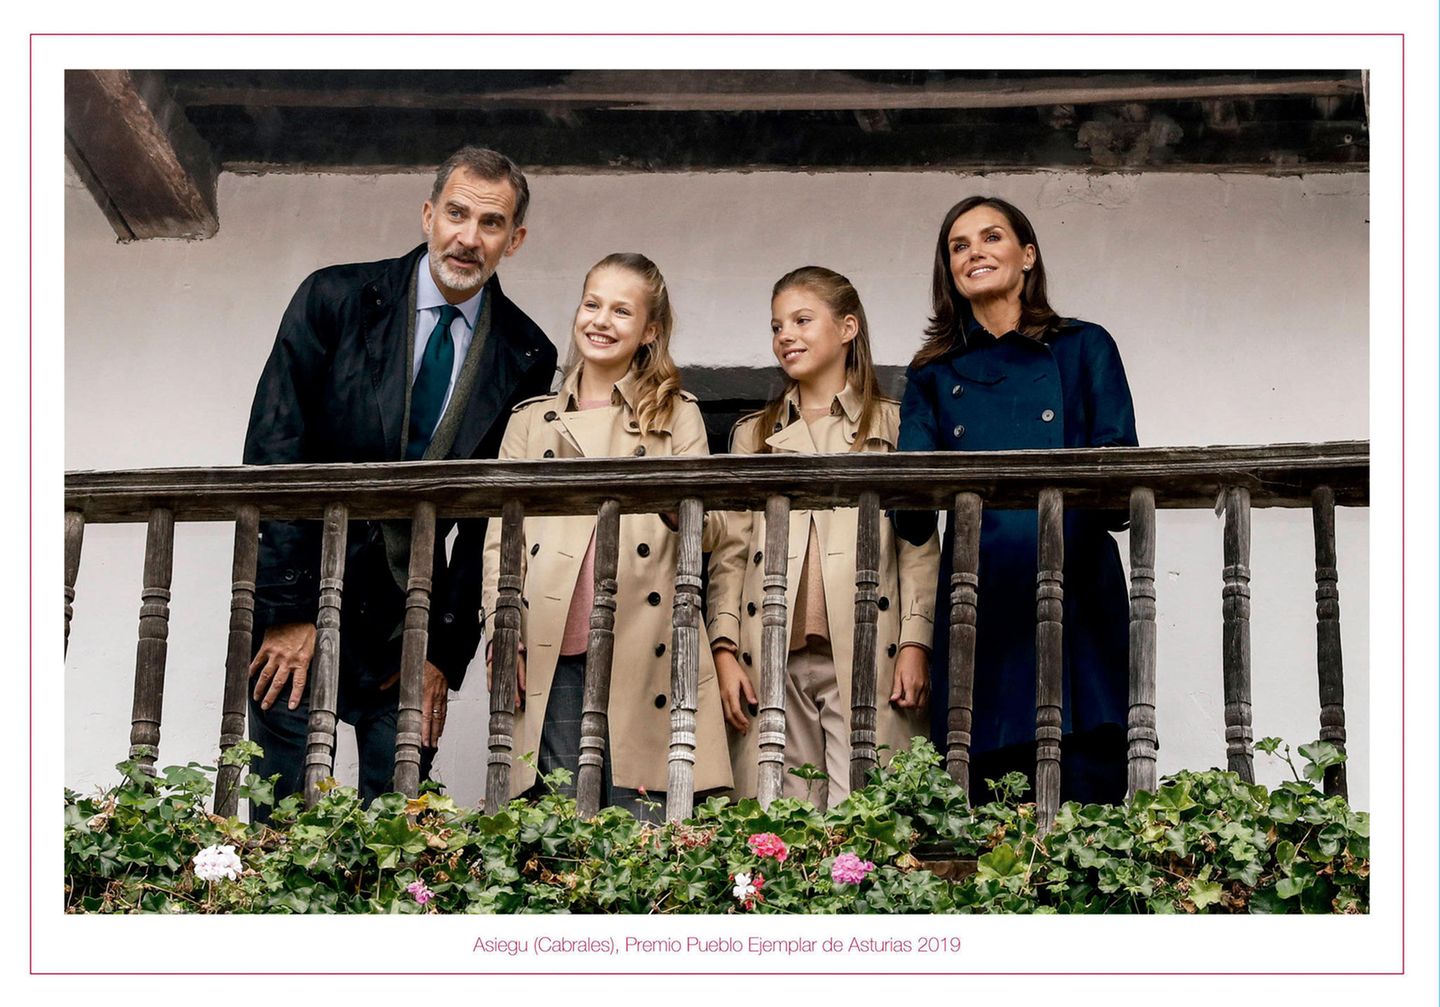 13. Dezember 2019  Feliz Navidad! Für ihre diesjährige Weihnachtskarte hat sich die spanische Königsfamilie ein älteres Fotomotiv aus dem Oktober ausgesucht. Die vier Royal hatten im Herbst das "beste asturische Dorf" Asiegu besucht.